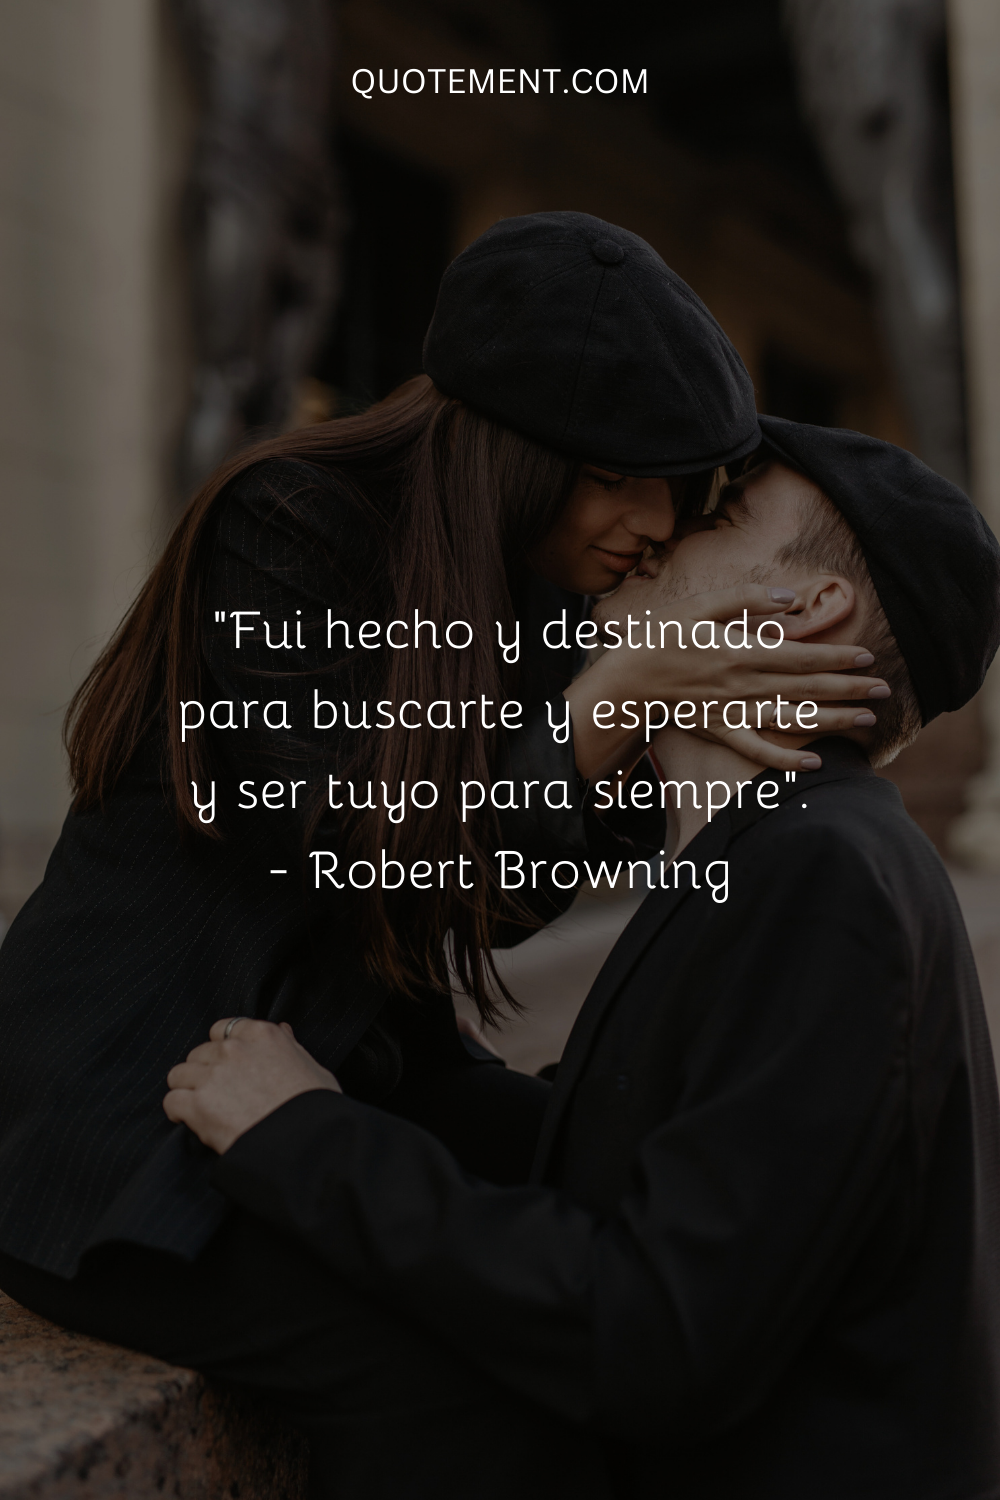 "Fui hecho y destinado para buscarte y esperarte y ser tuyo para siempre". - Robert Browning